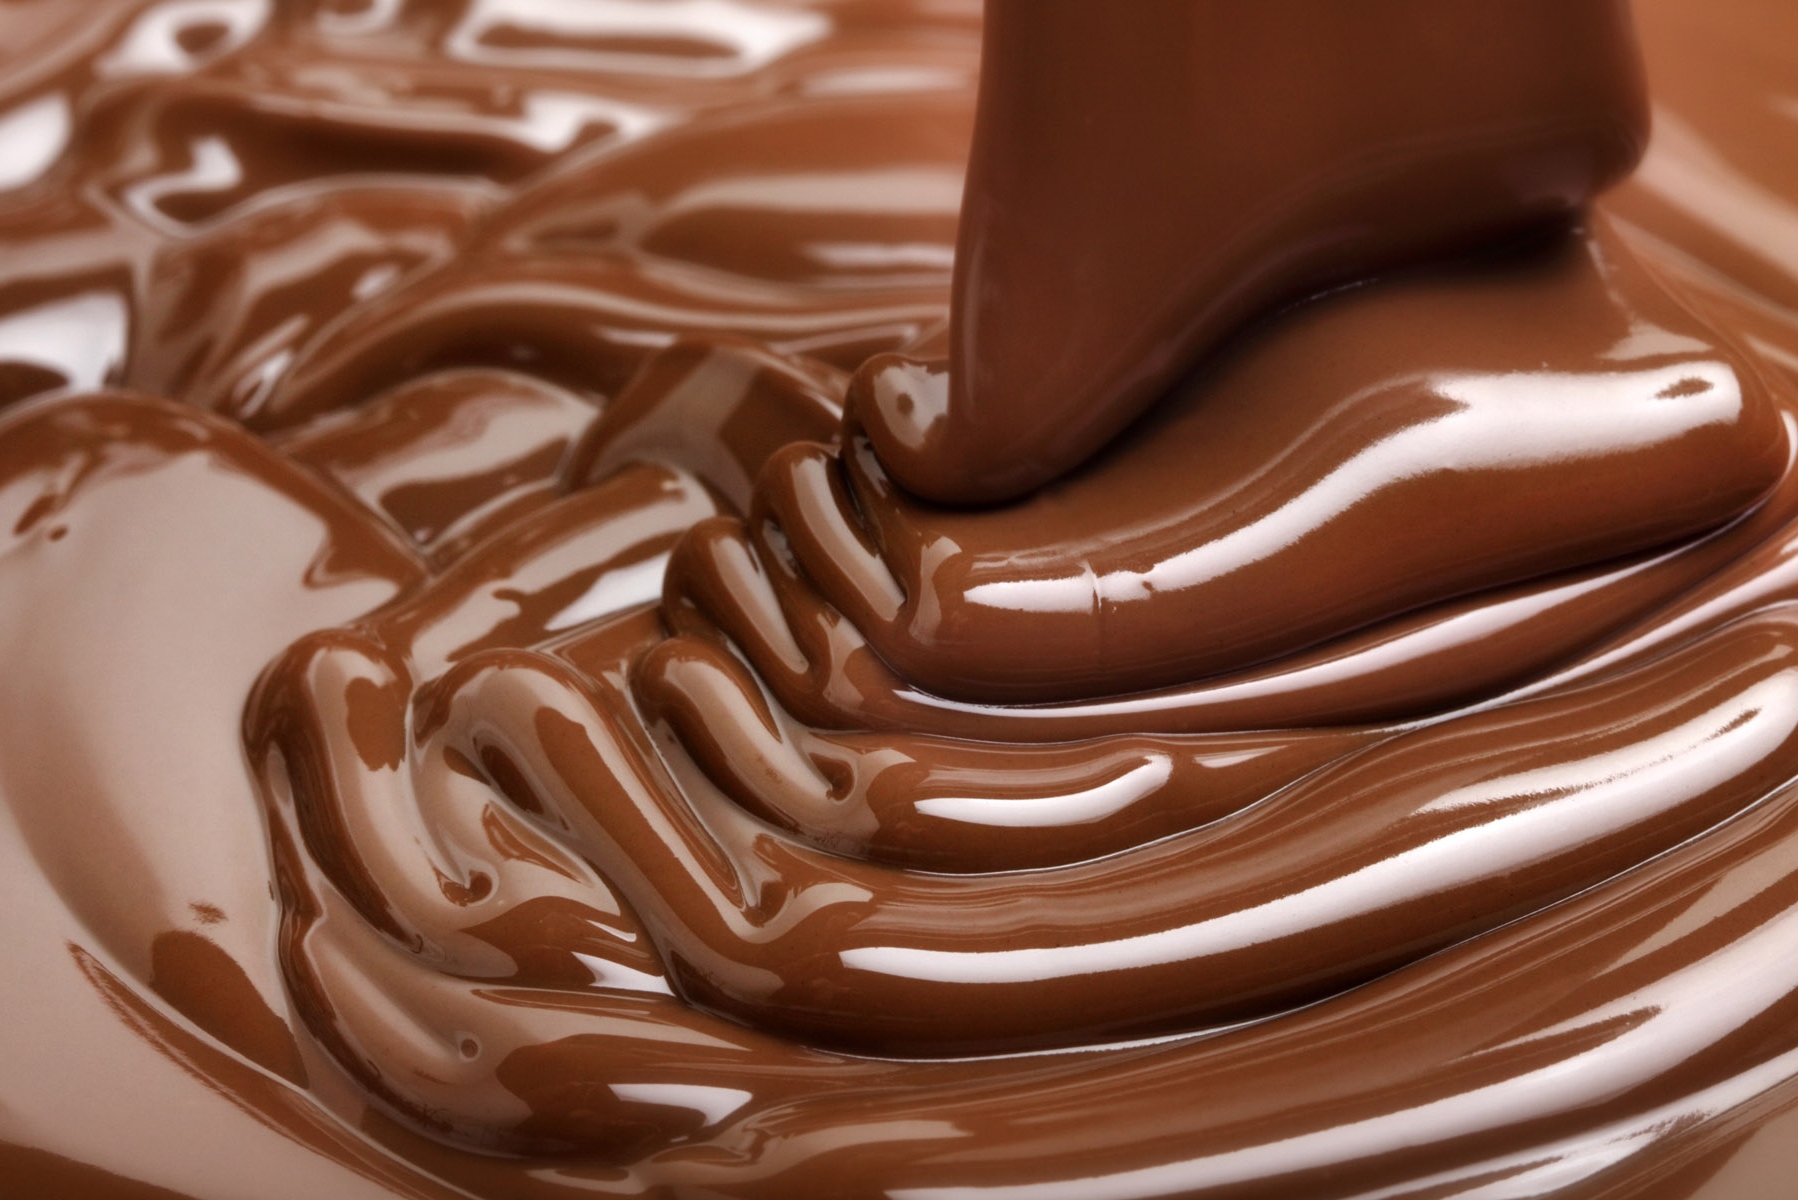 Как делают шоколад